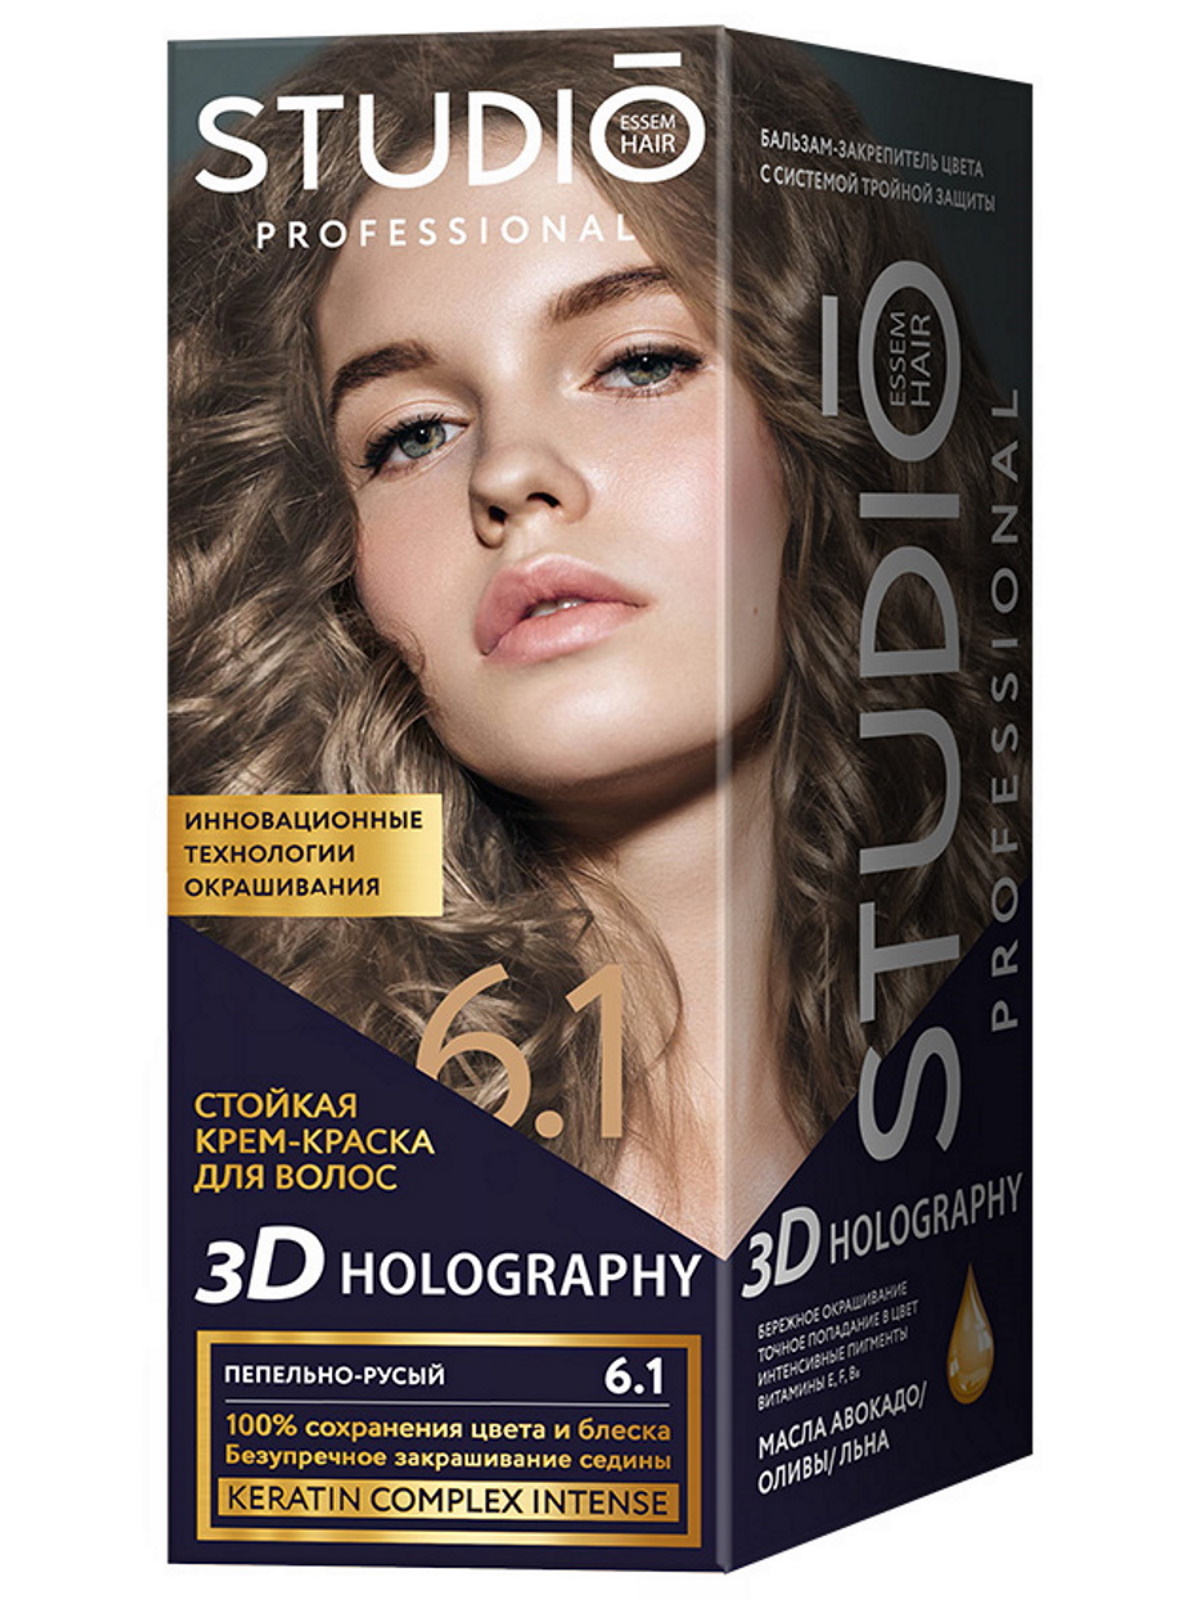 Комплект 3D HOLOGRAPHY STUDIO PROFESSIONAL 6.1 пепельно-русый 2*50+15 мл studio professional стойкая крем краска для волос 3d holography